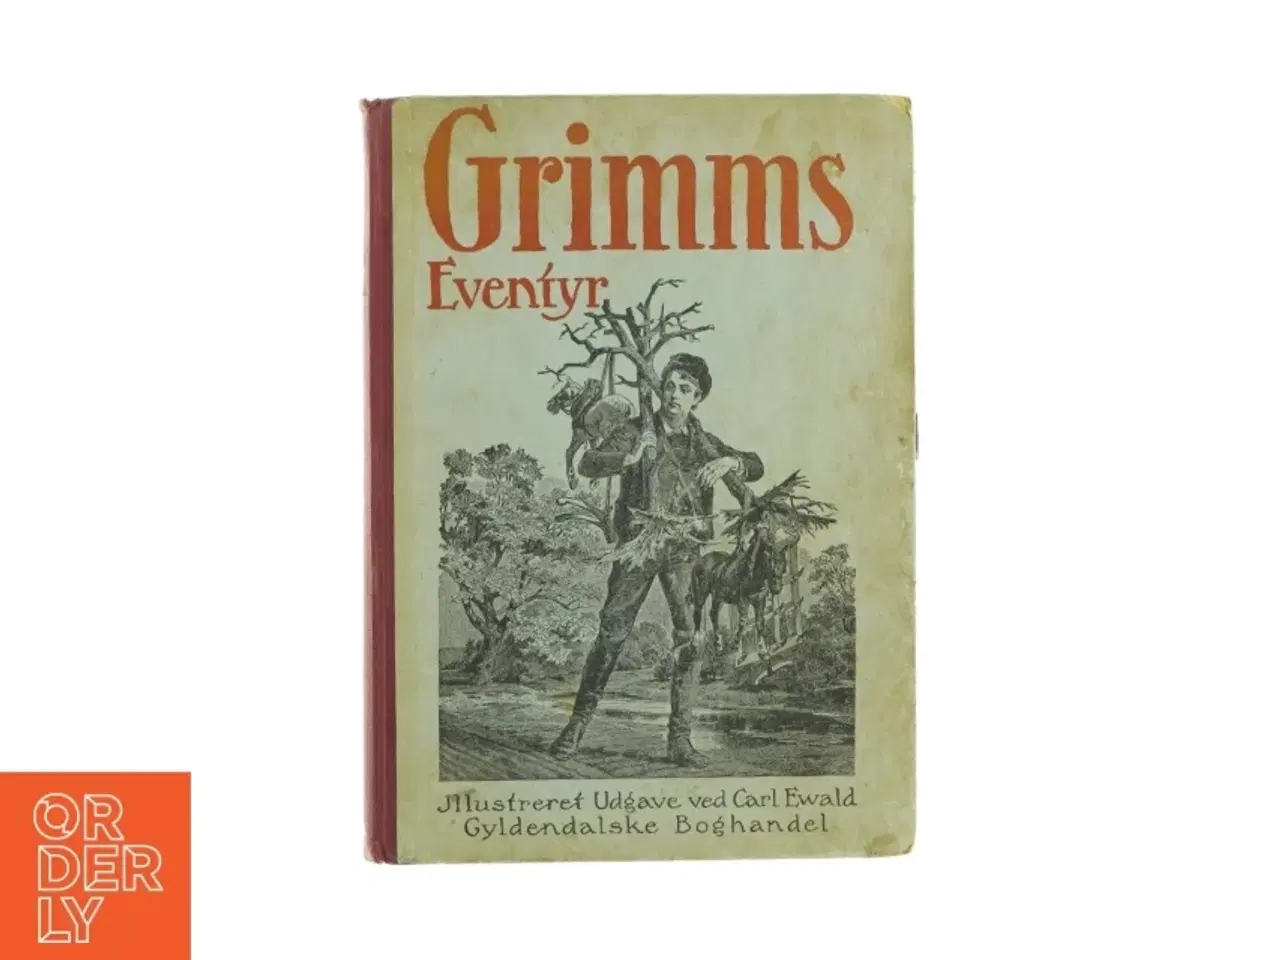 Billede 1 - Grimms eventyr illustreret udgave ved Carl Ewald (Bog)